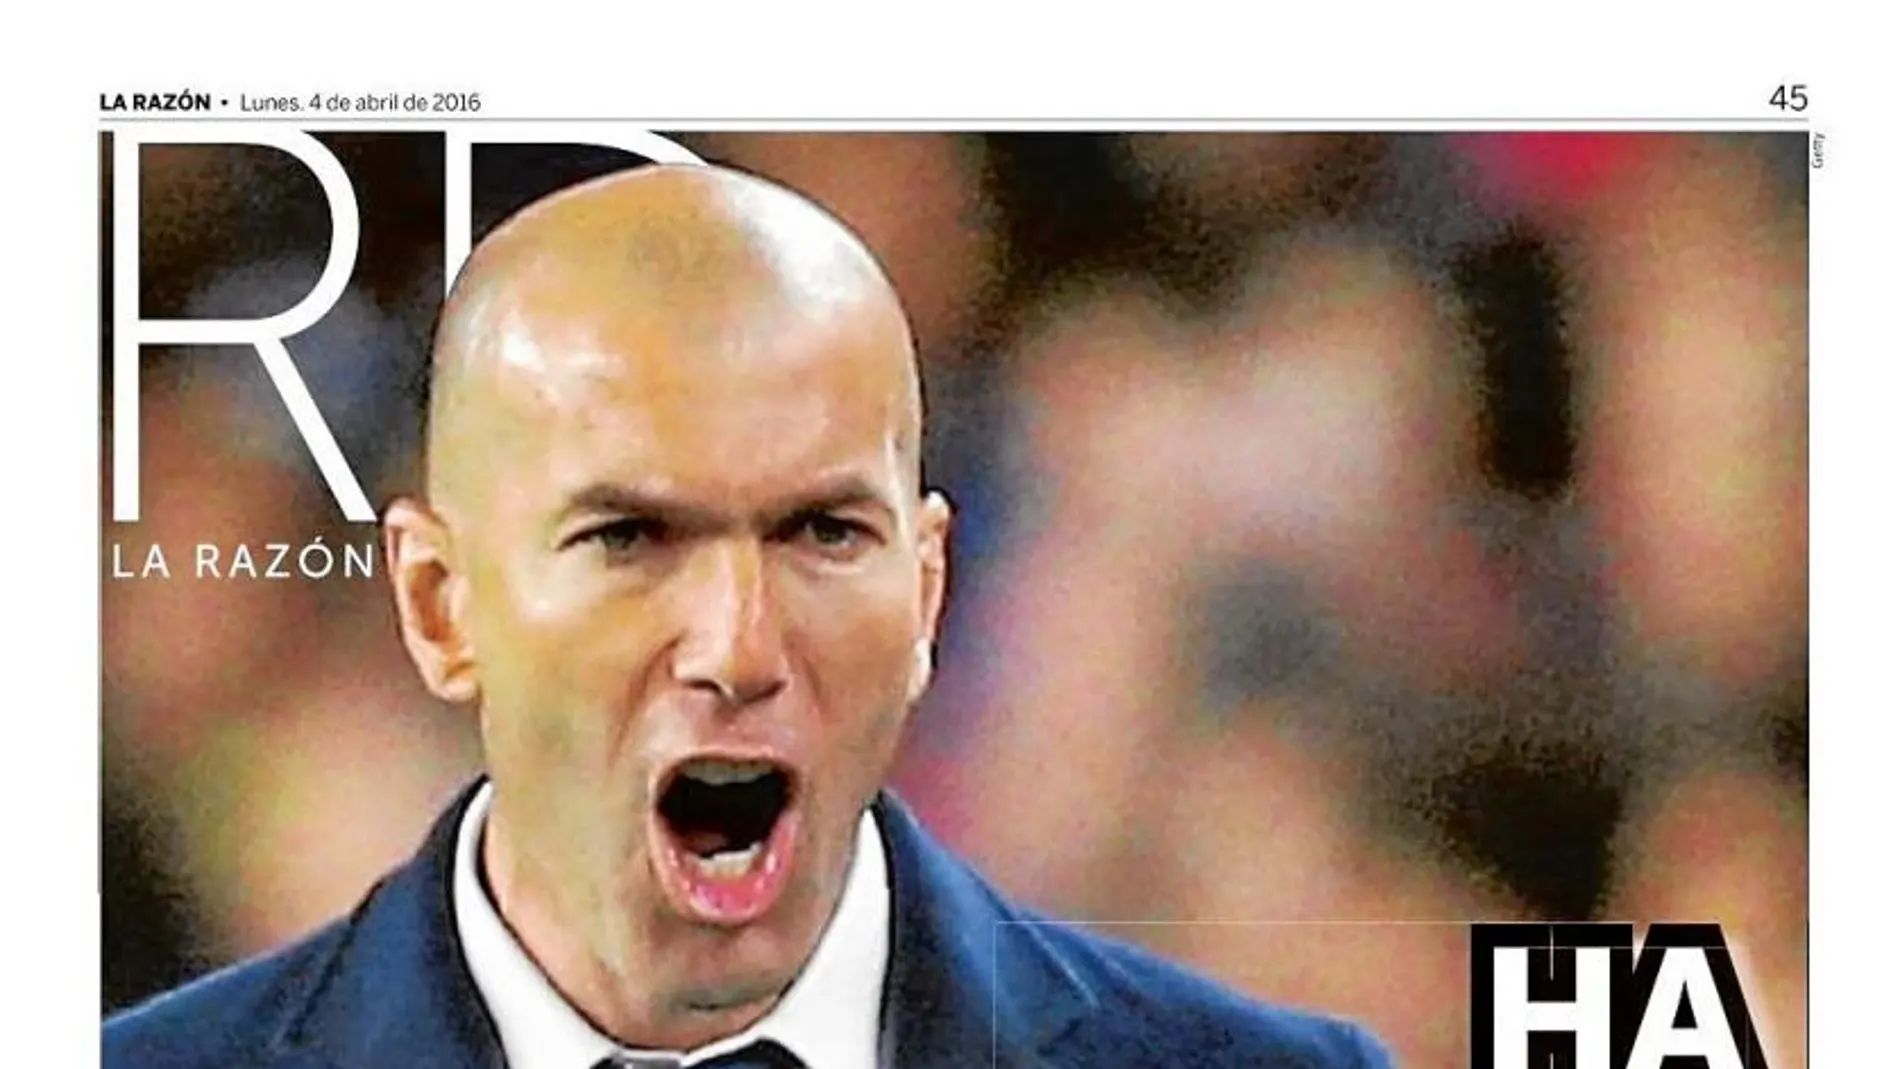 El 4 de abril, Zidane ya demostró de lo que era capaz en el Madrid